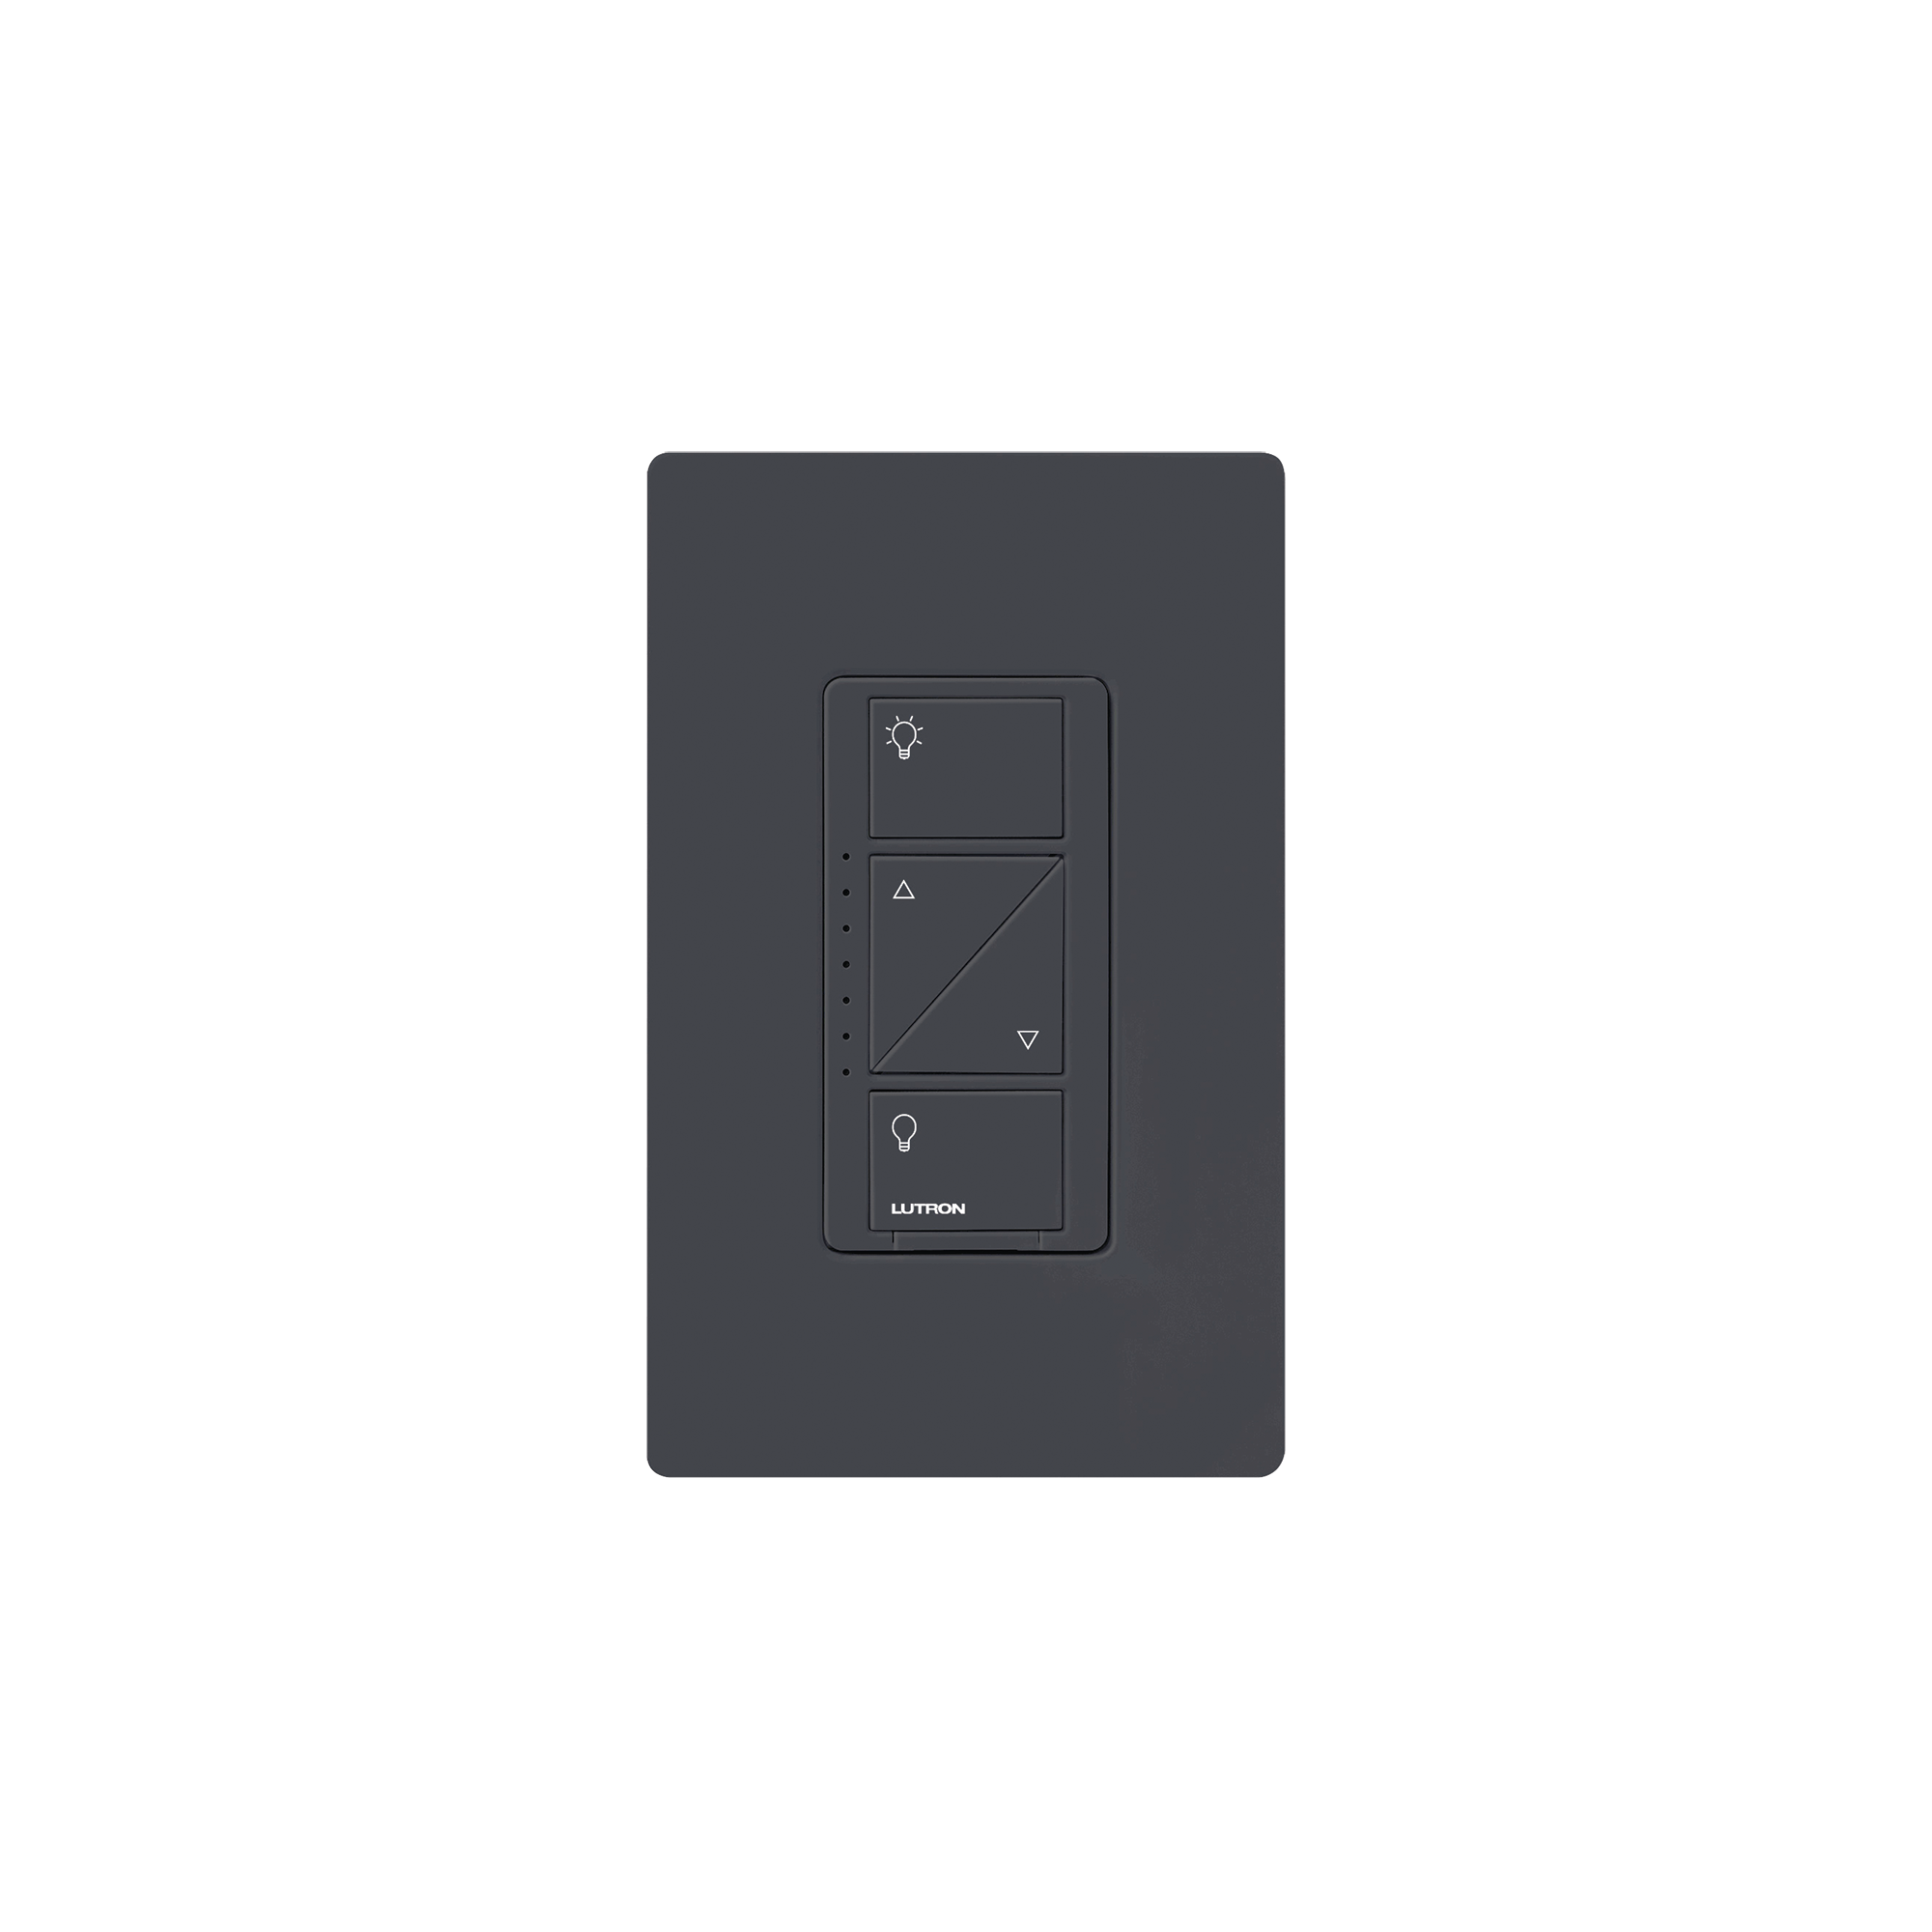 Atenuador (Dimmer) de pared. Aumenta/Disminuye Intensidad de Iluminación. No requiere cable neutro, integrable al HUB de Caseta y su App.